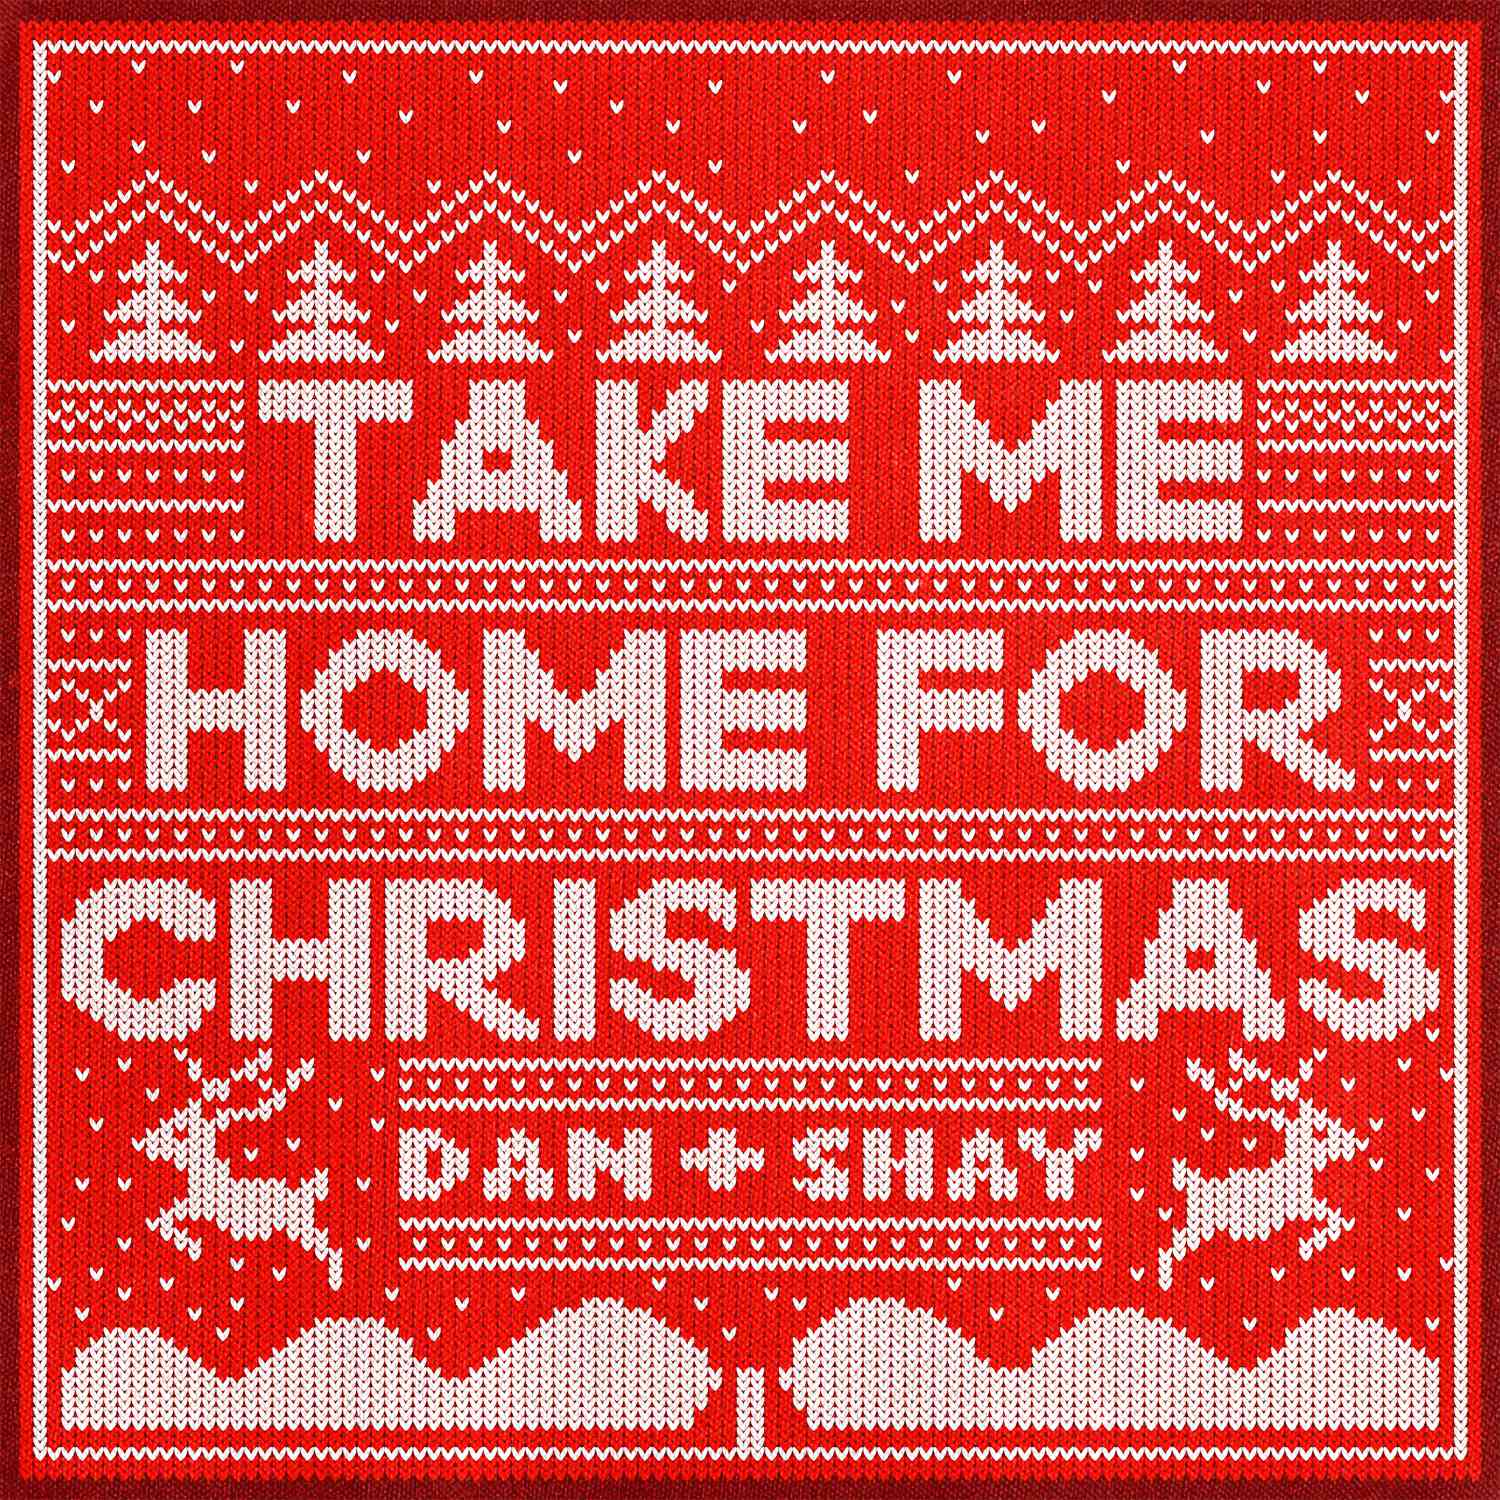 Dan + Shay - Take me home for Christmas